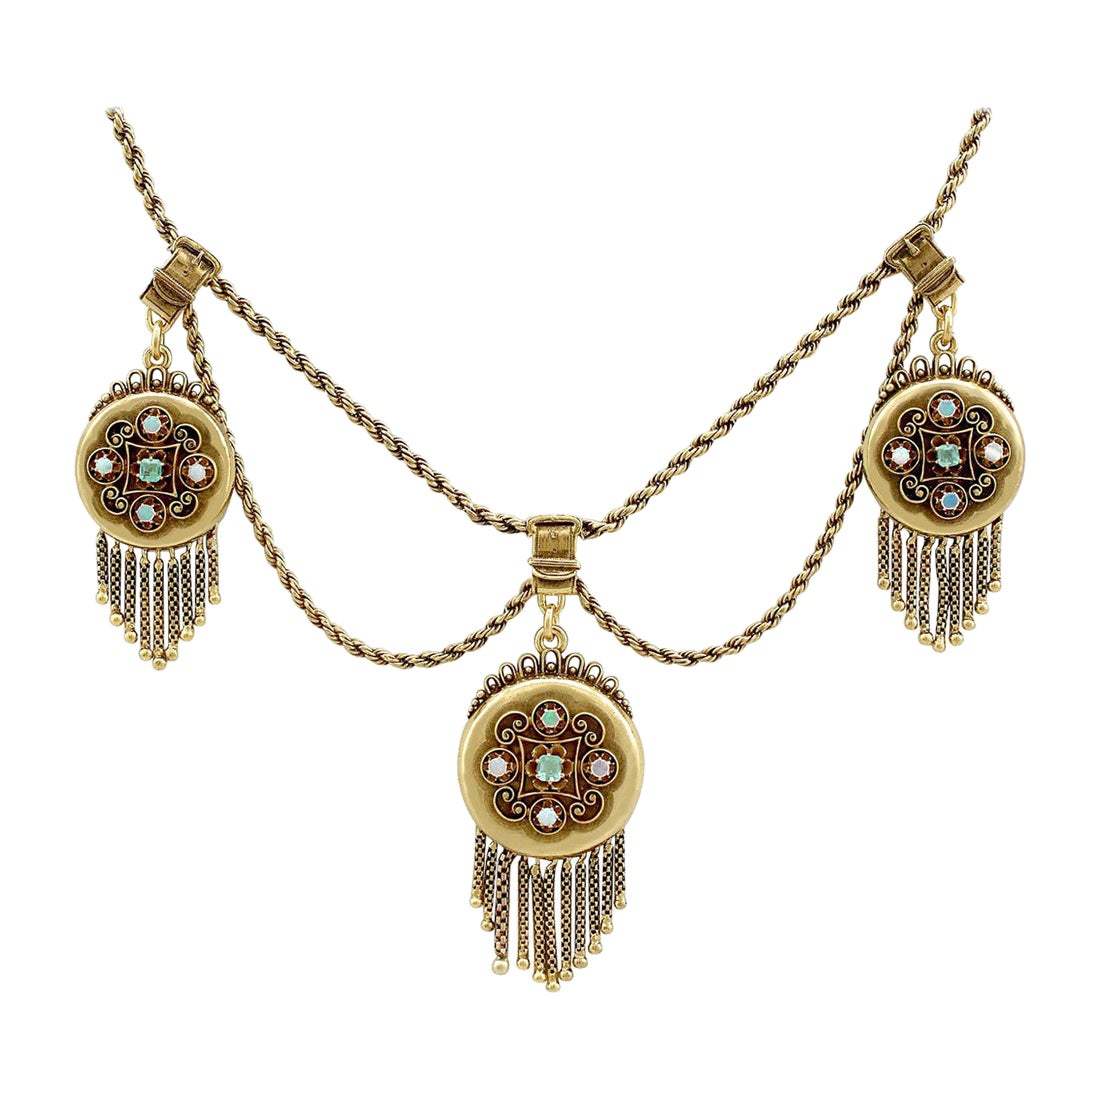 Viktorianische Medaillon-Halskette aus Gelbgold mit Smaragd und Opal, drei Medaillons